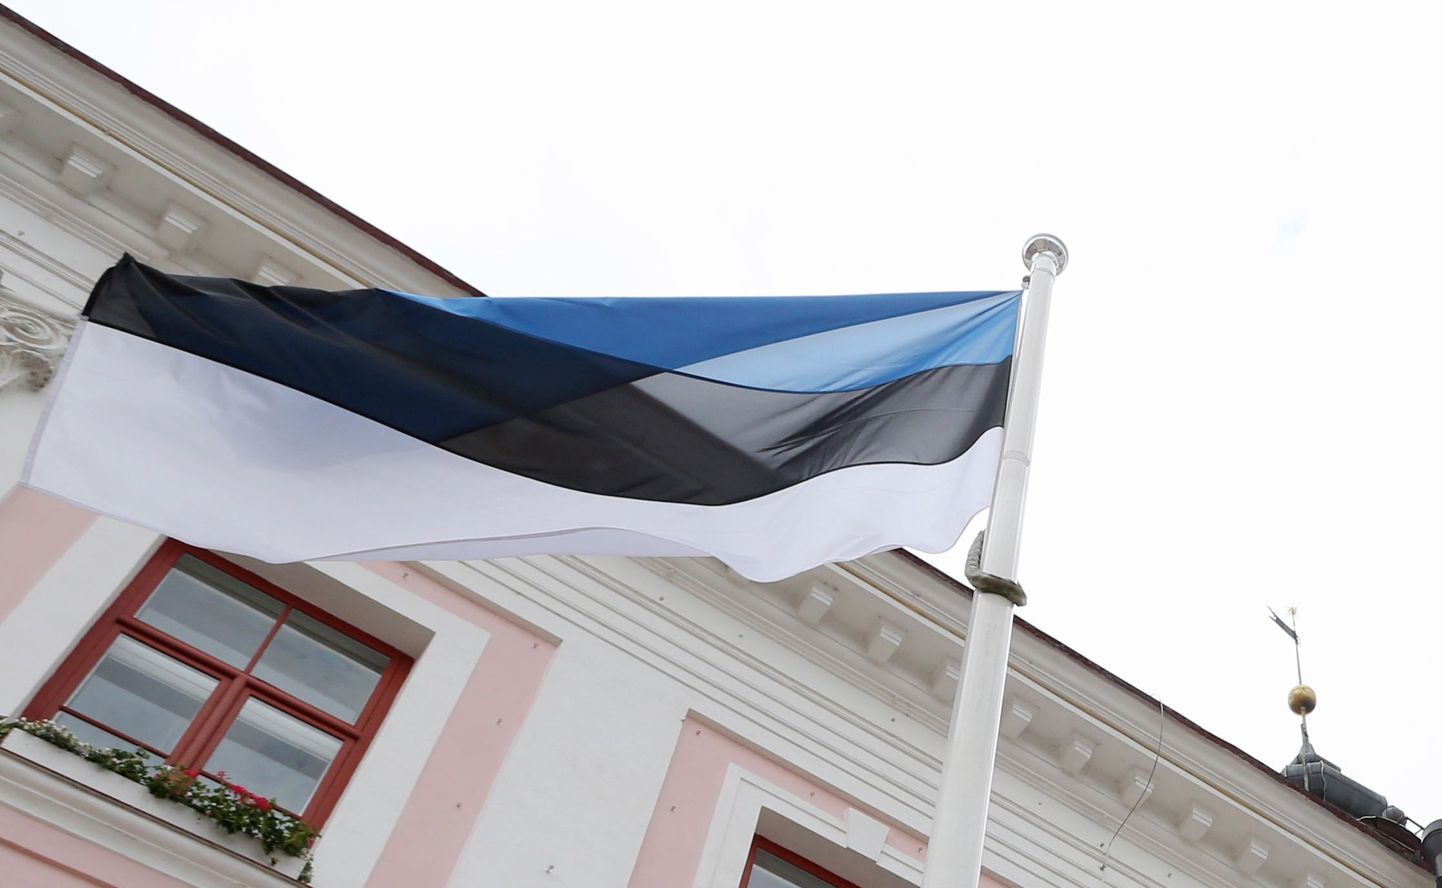 Sinimustvalge lipp Tartu raekoja ees.